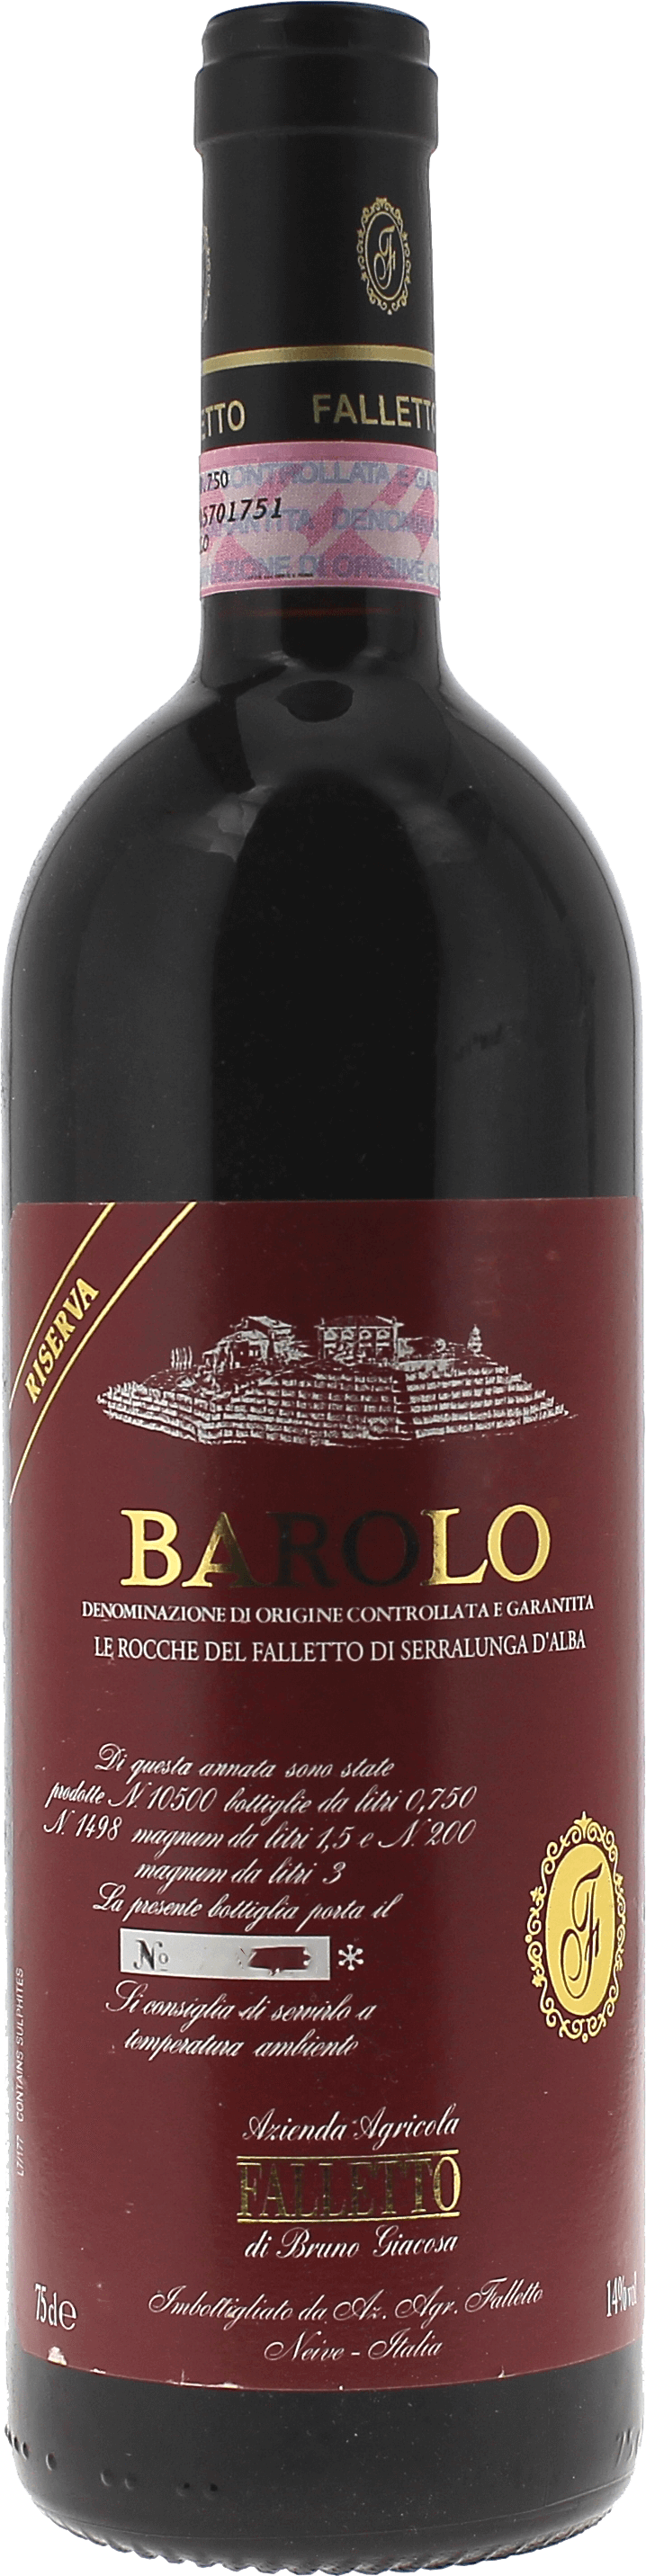 Barolo le rocche del falletto riserva bruno giacosa 2004 Barolo Docg Italie, Vin italien